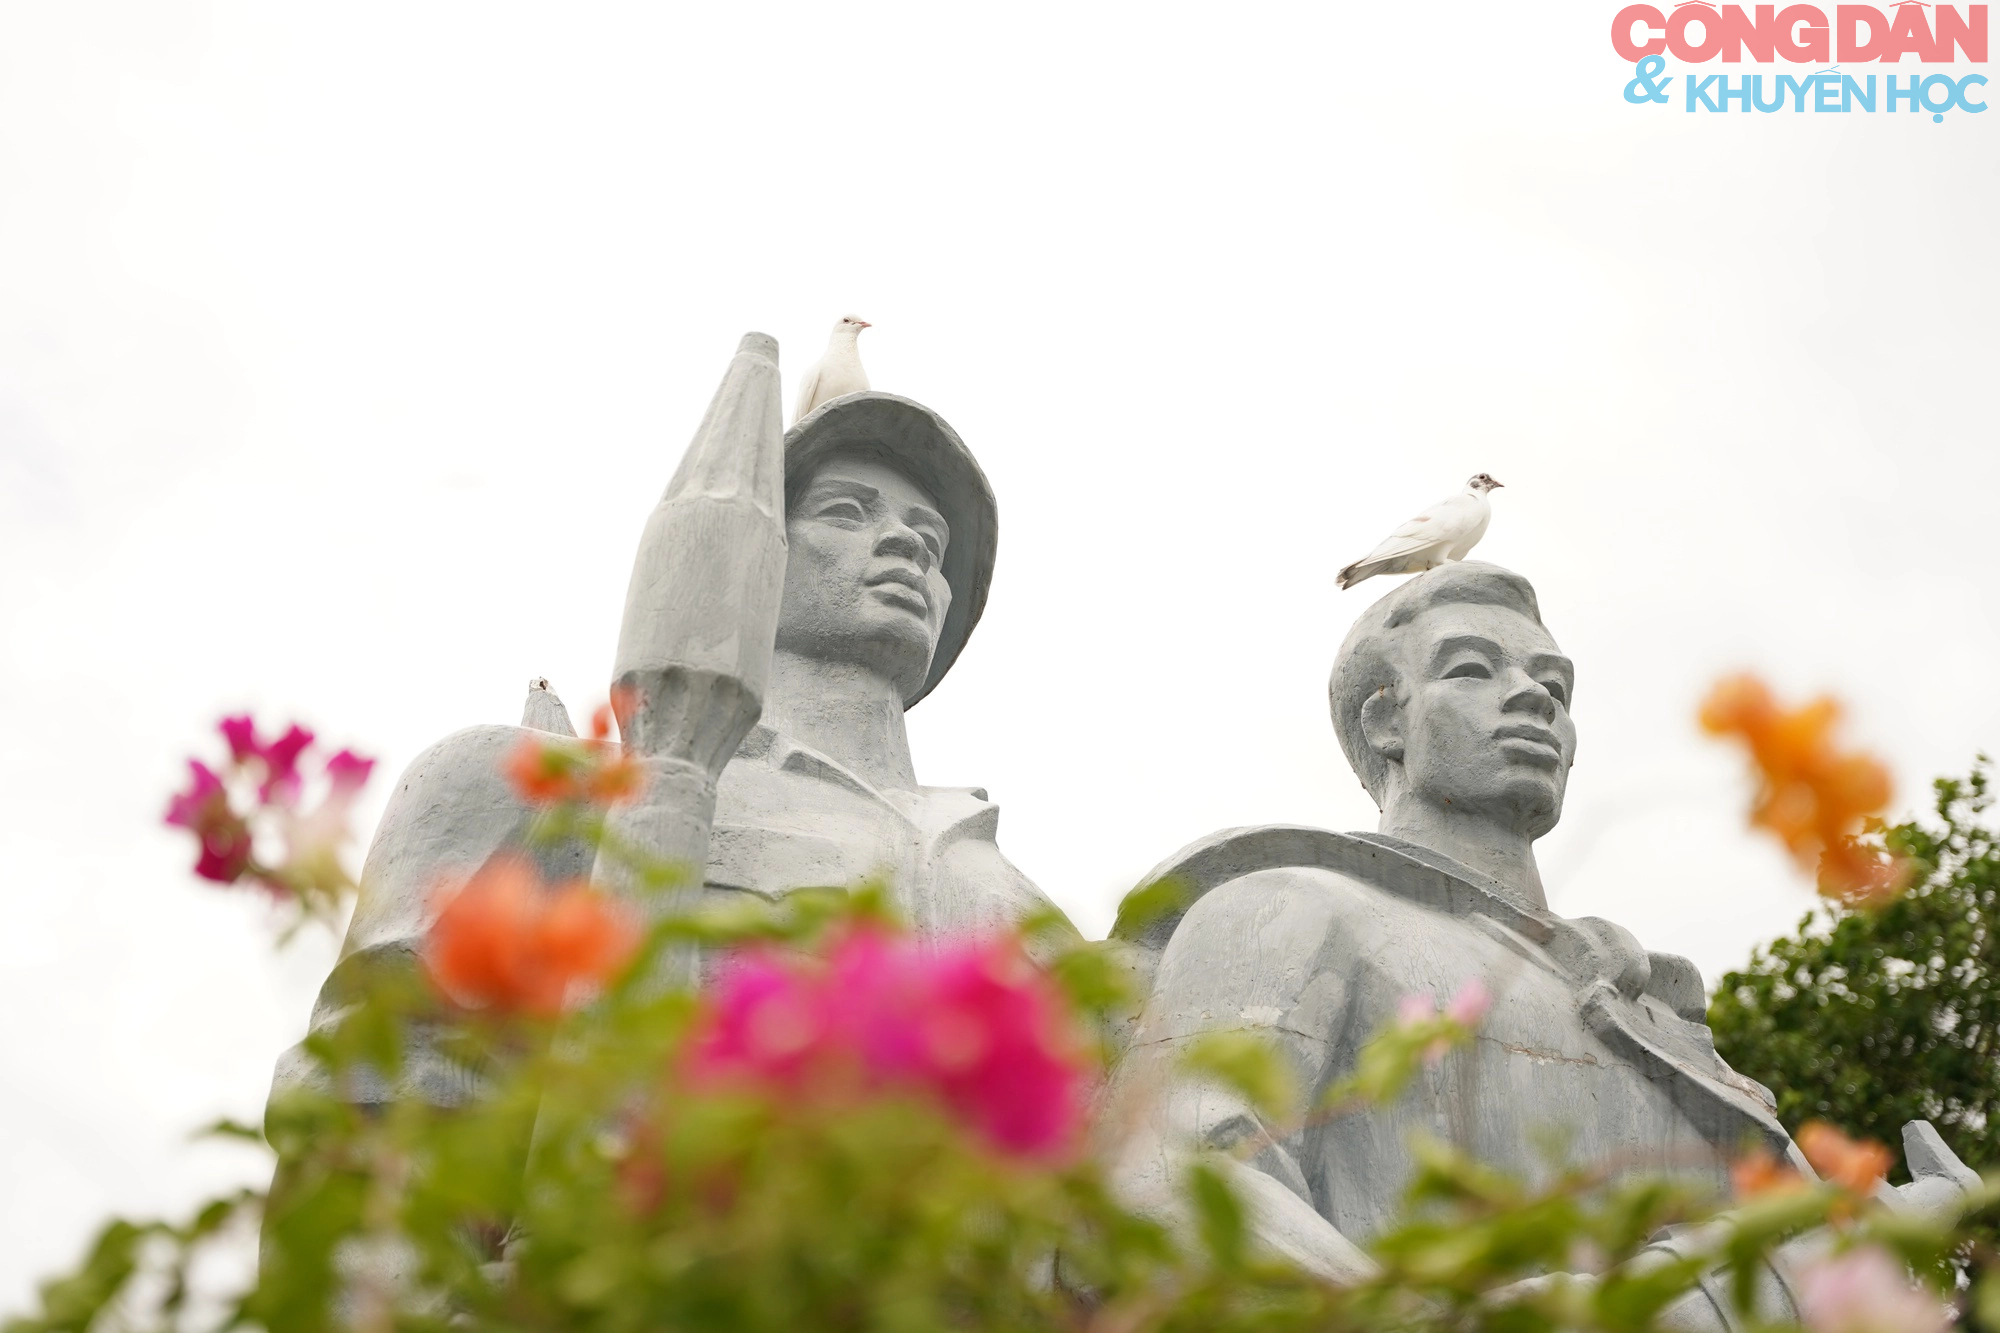 Hội Khuyến học Việt Nam dâng hương tưởng nhớ công lao các Anh hùng liệt sĩ tại Quảng Trị - Ảnh 9.